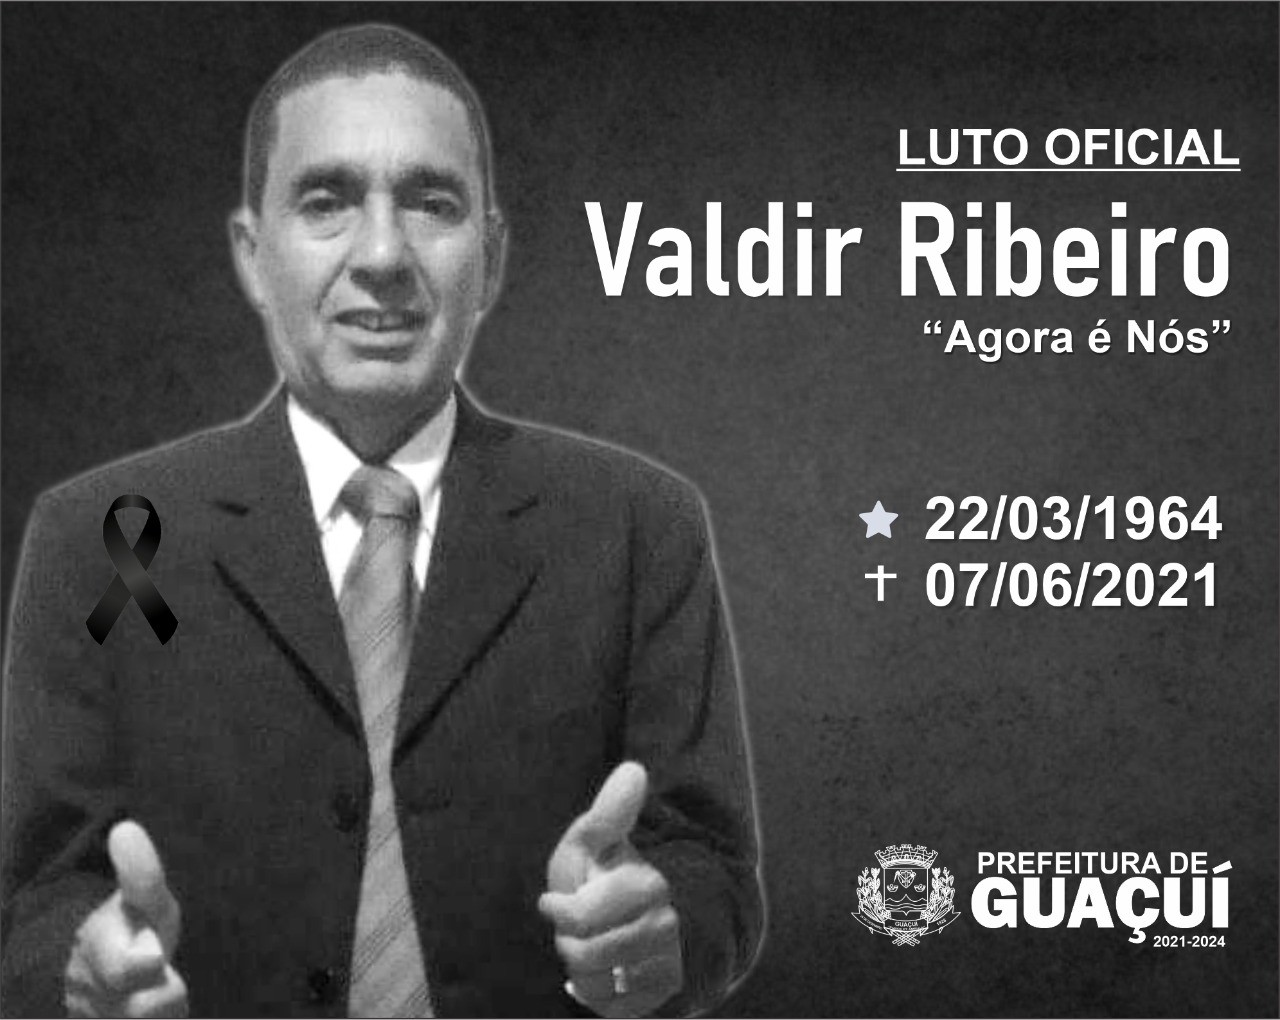 Prefeito de Guaçuí decreta luto oficial pelo falecimento de Valdir Ribeiro (Agora é Nós).